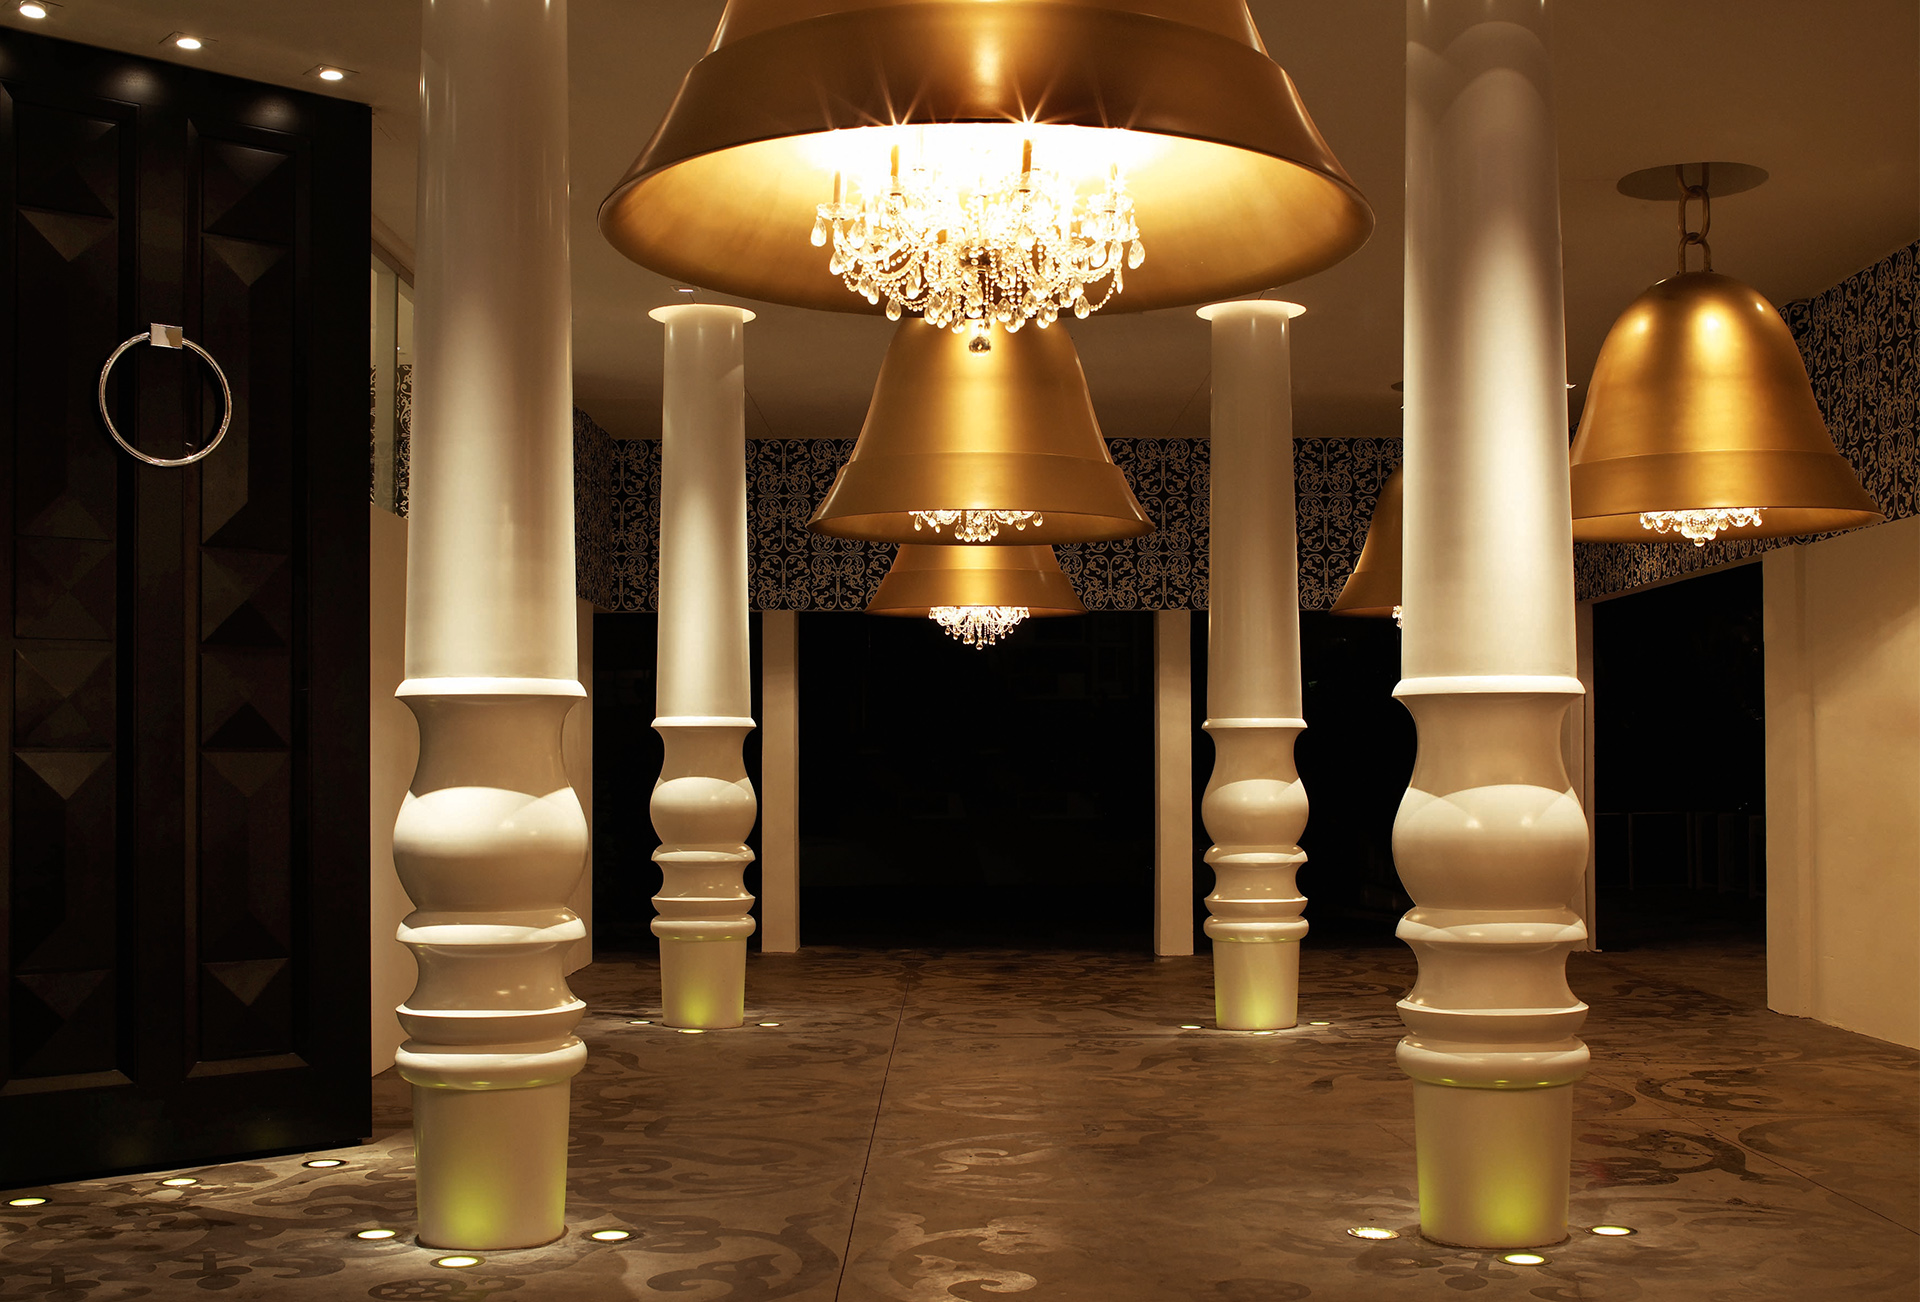  W holu pomiędzy białymi kolumnami wiszą ogromne, złote latarnie.